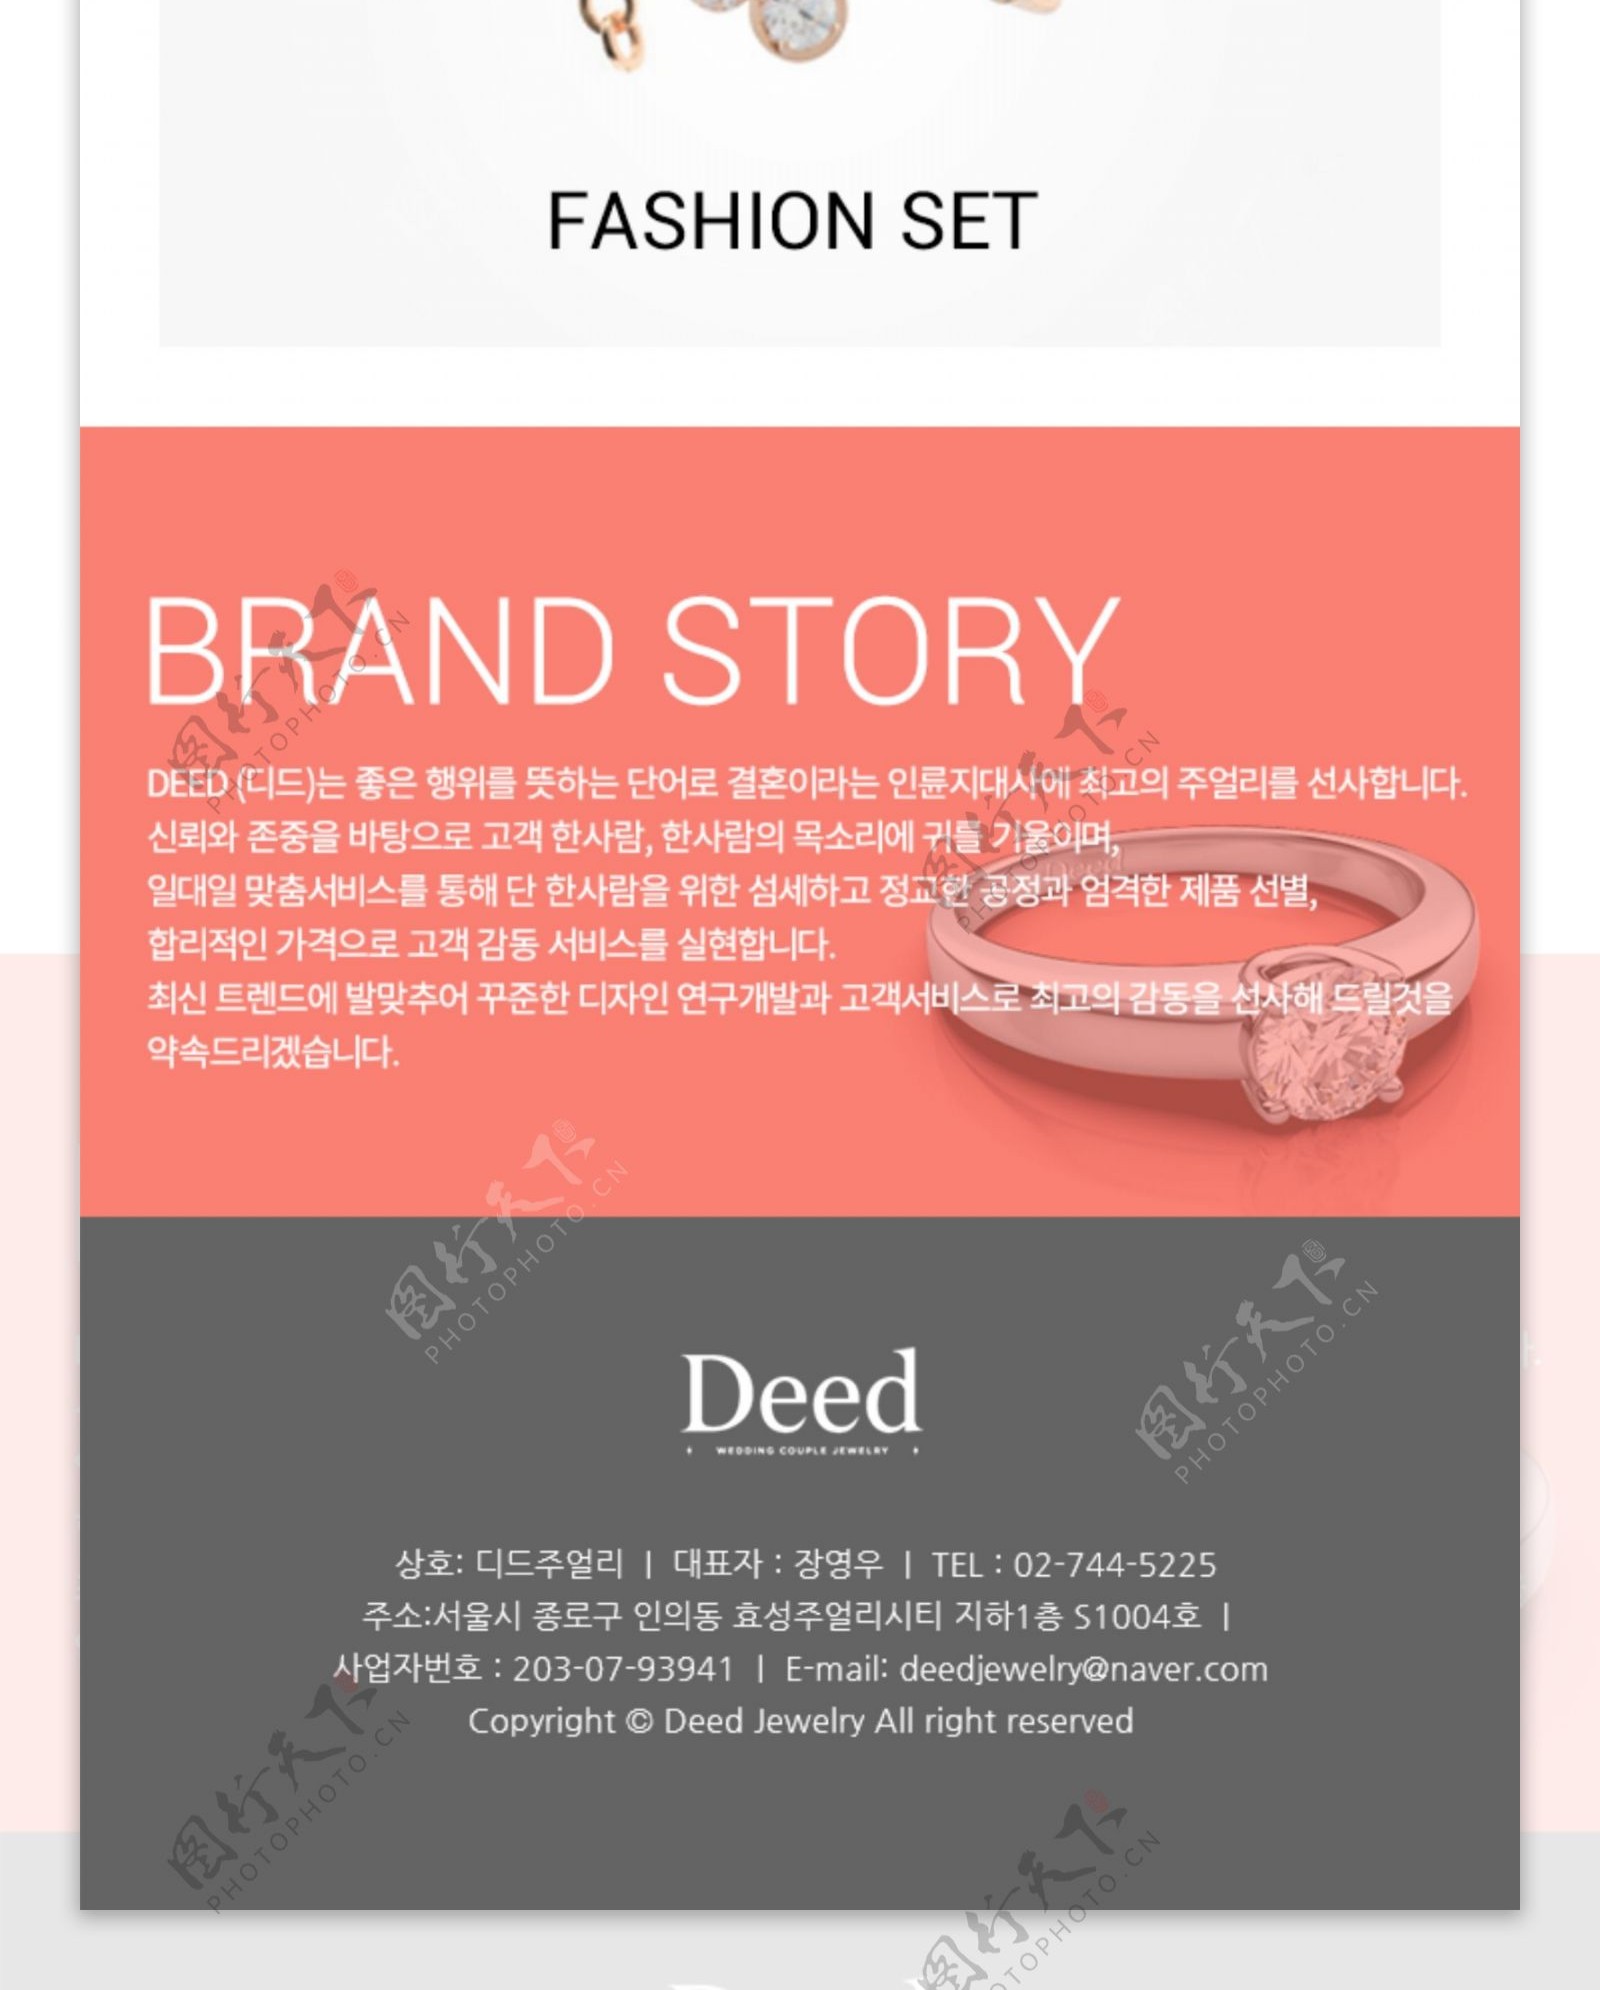 韩国饰品品牌网站响应式设计